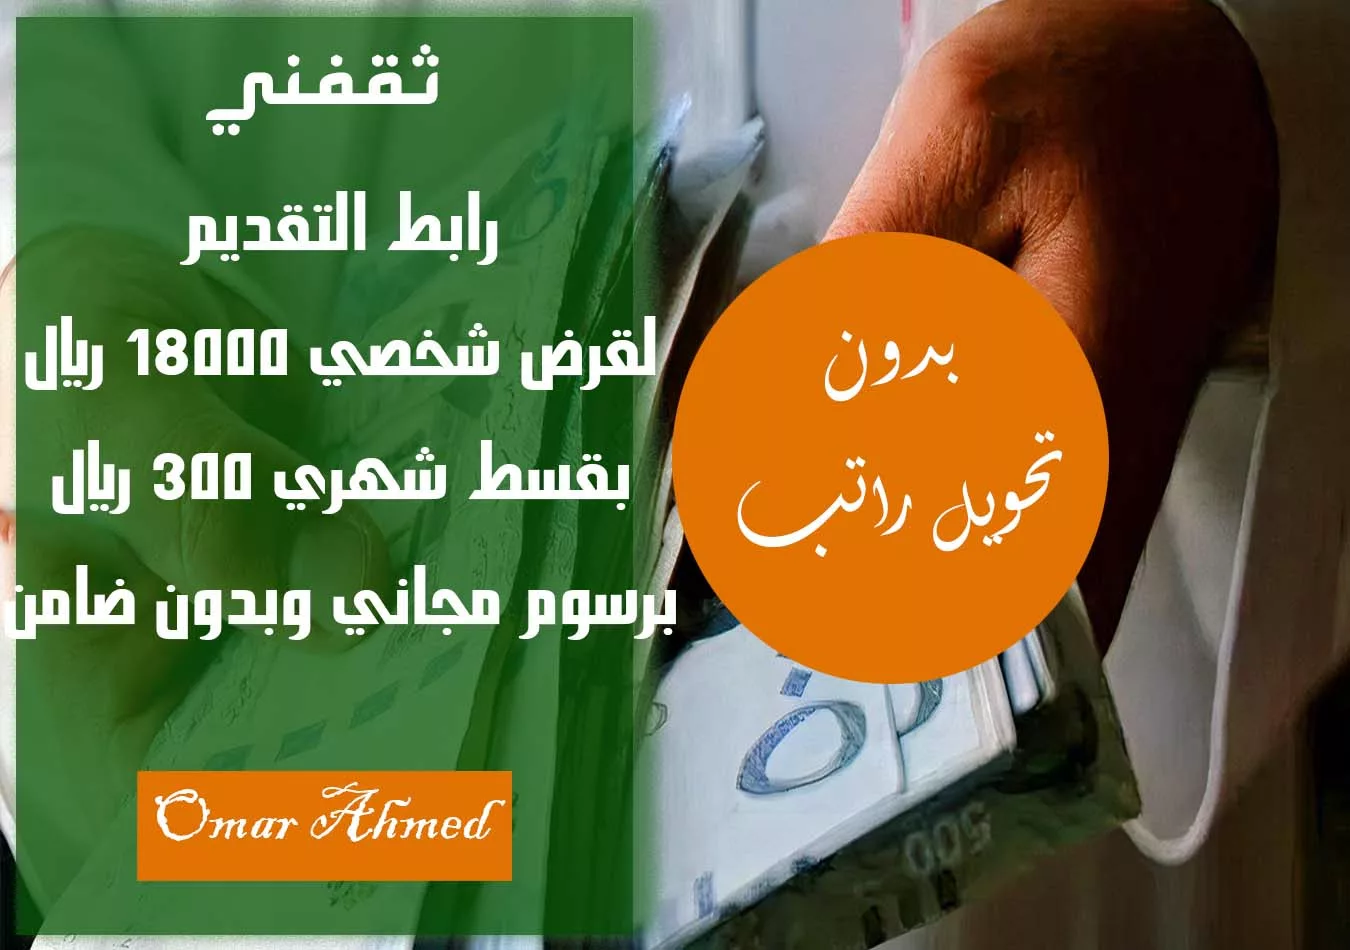 قرض شخصي بدون كفيل jpg - مدونة التقنية العربية